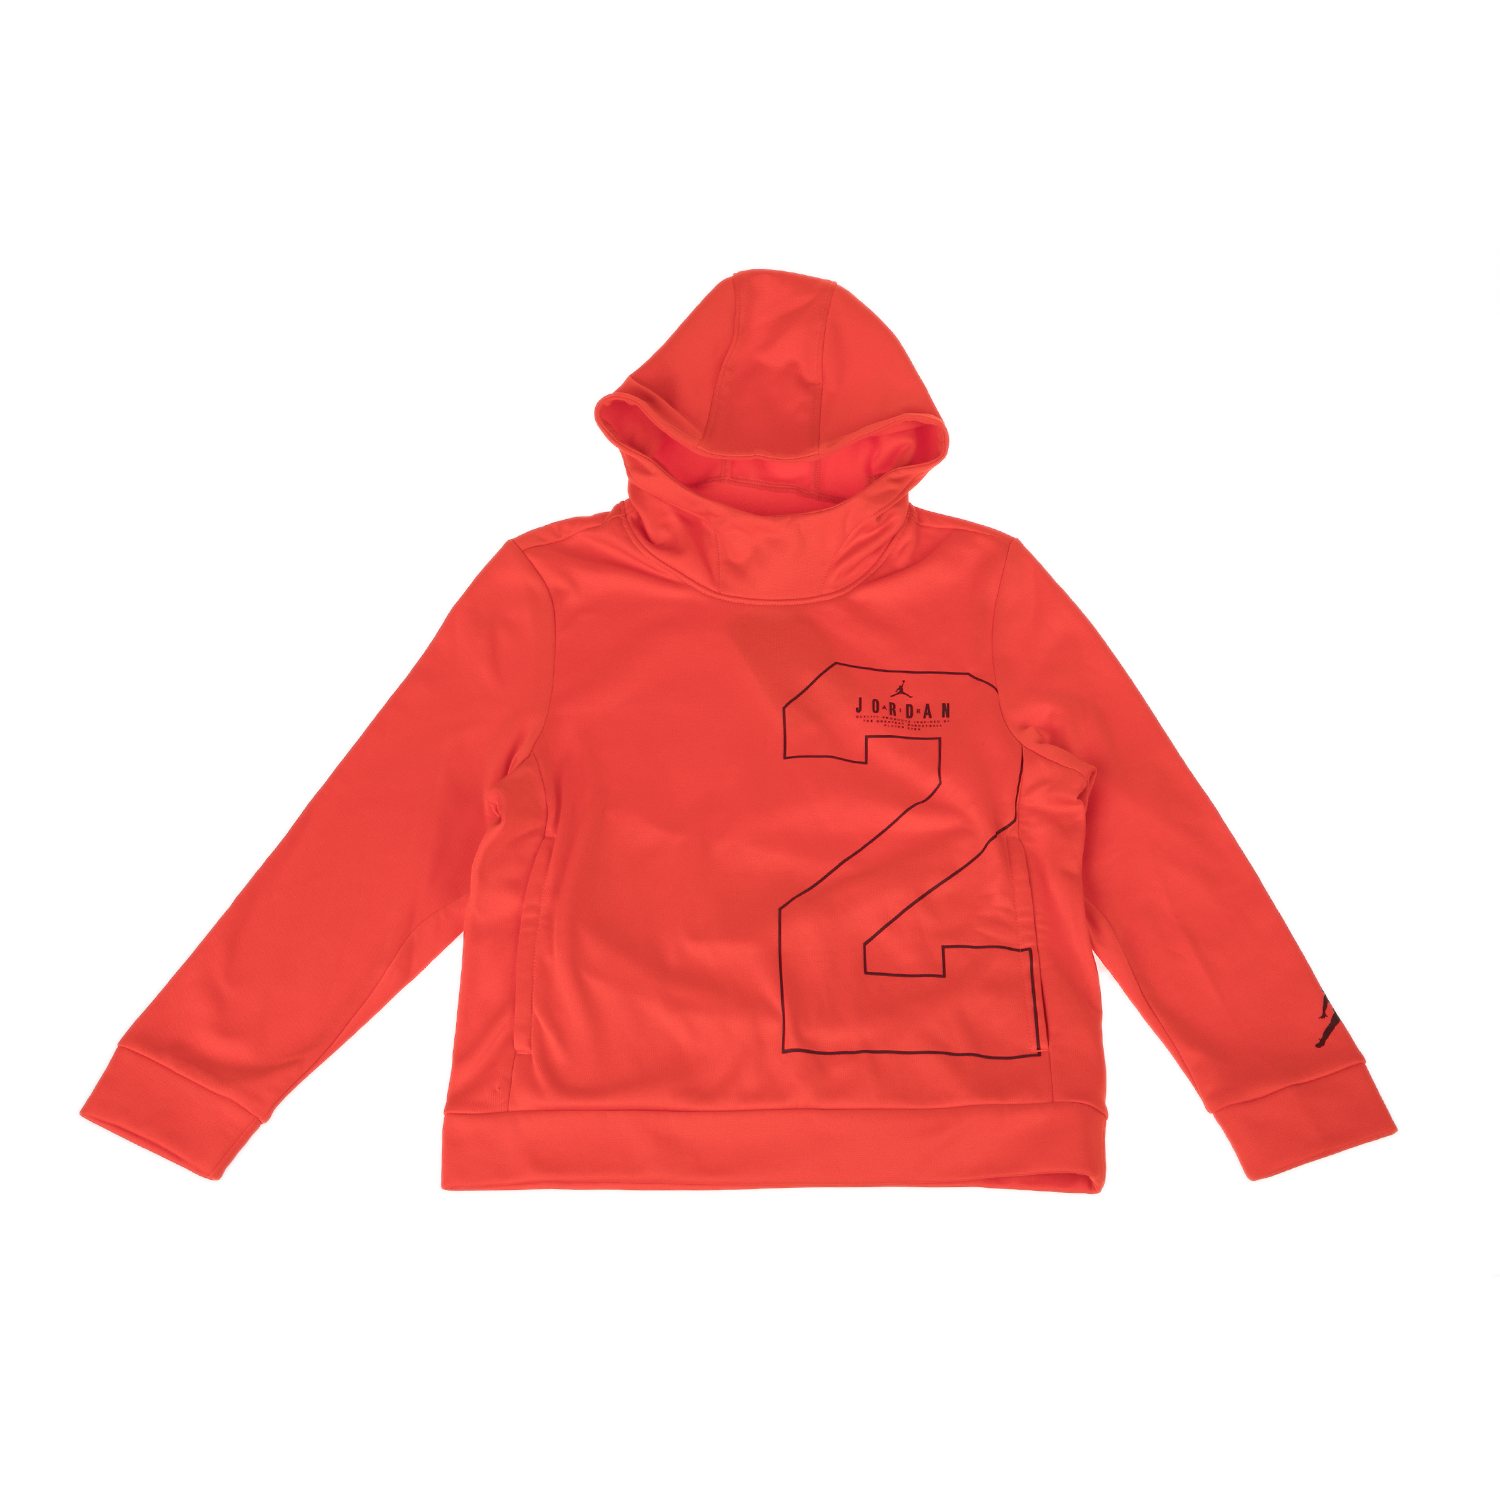 Παιδικά/Boys/Ρούχα/Φούτερ NIKE - Παιδική φούτερ μπλούζα NIKE JORDAN πορτοκαλί